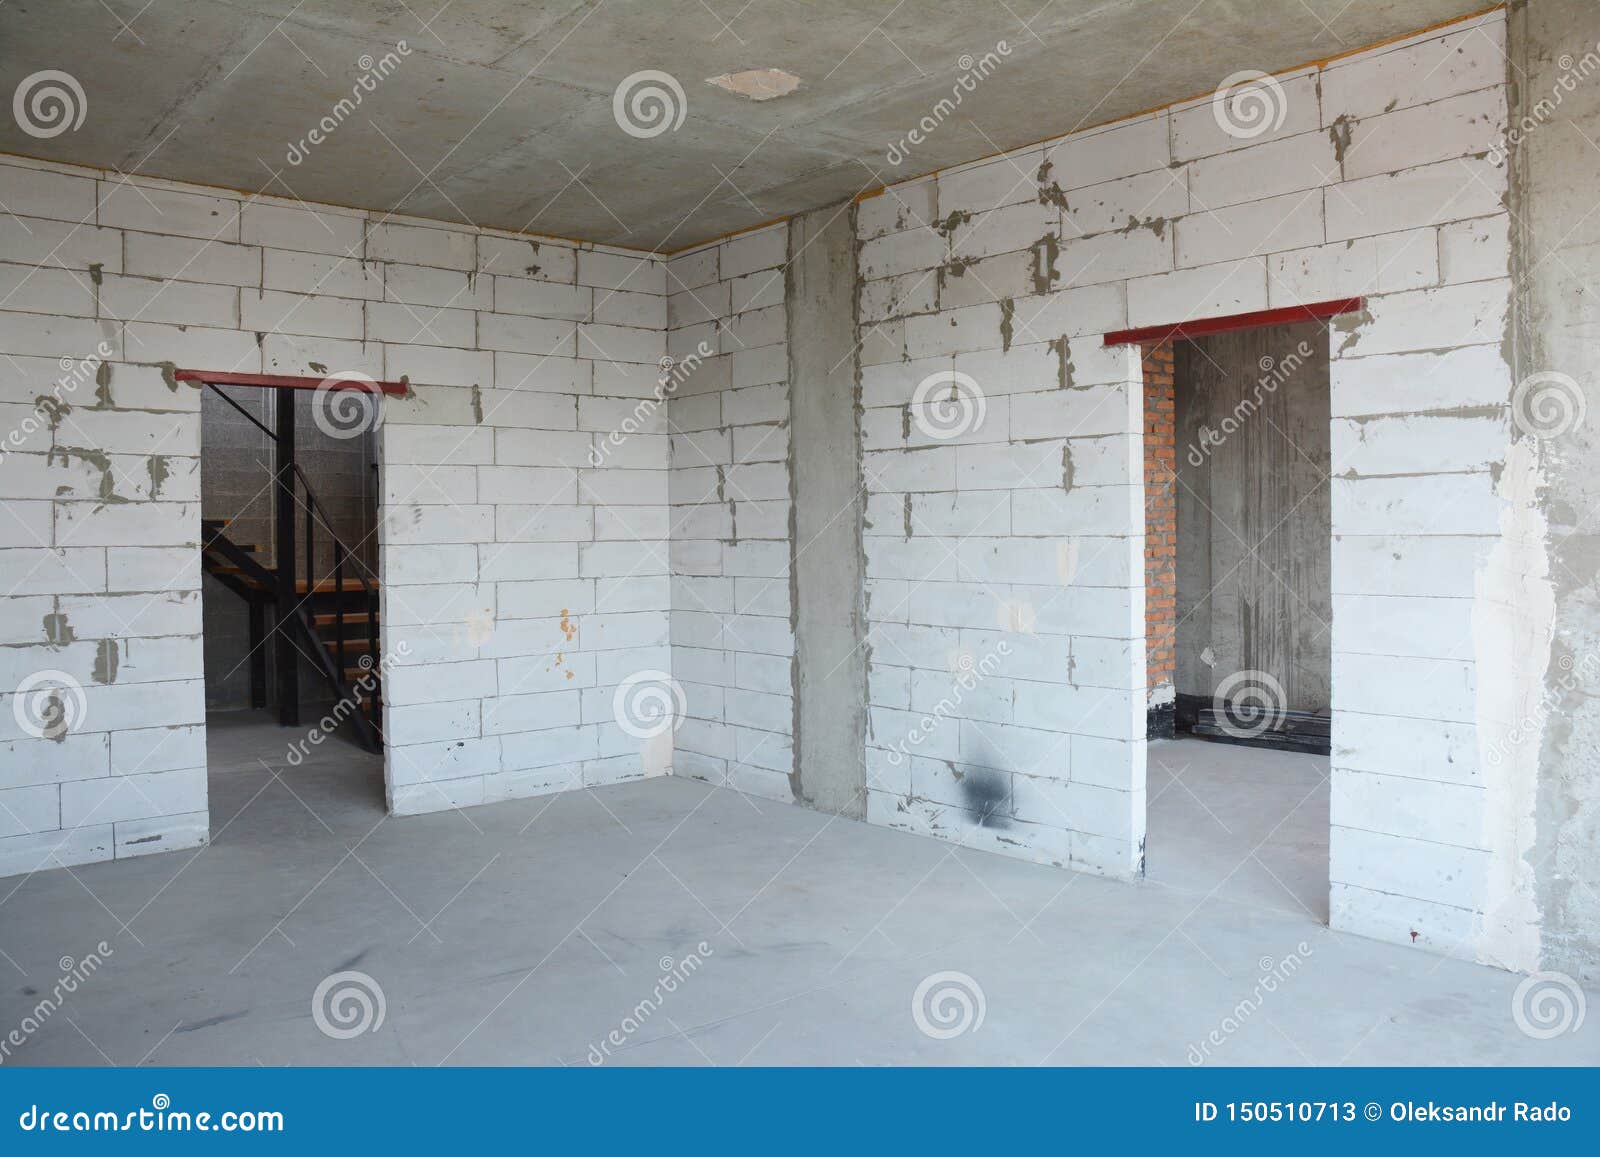 interior room under construction, metal door lintels. wall without plasterwork